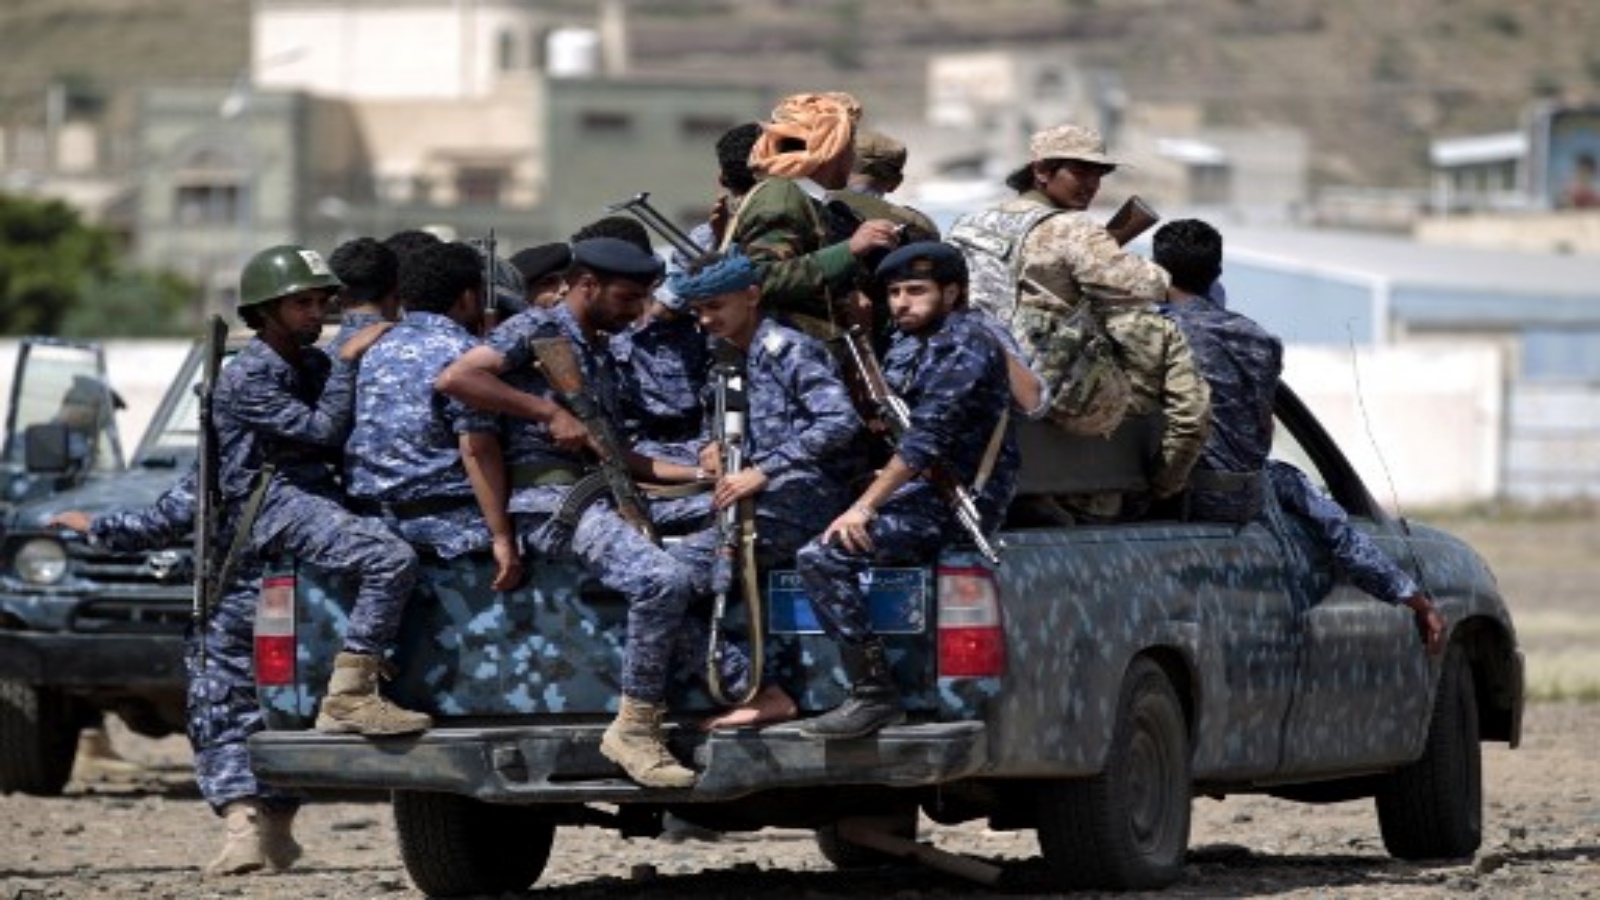 قوات الشرطة اليمنية الحوثية الشيعية تجلس في مؤخرة مركبة عسكرية في العاصمة صنعاء أثناء احتجاج عام 2019